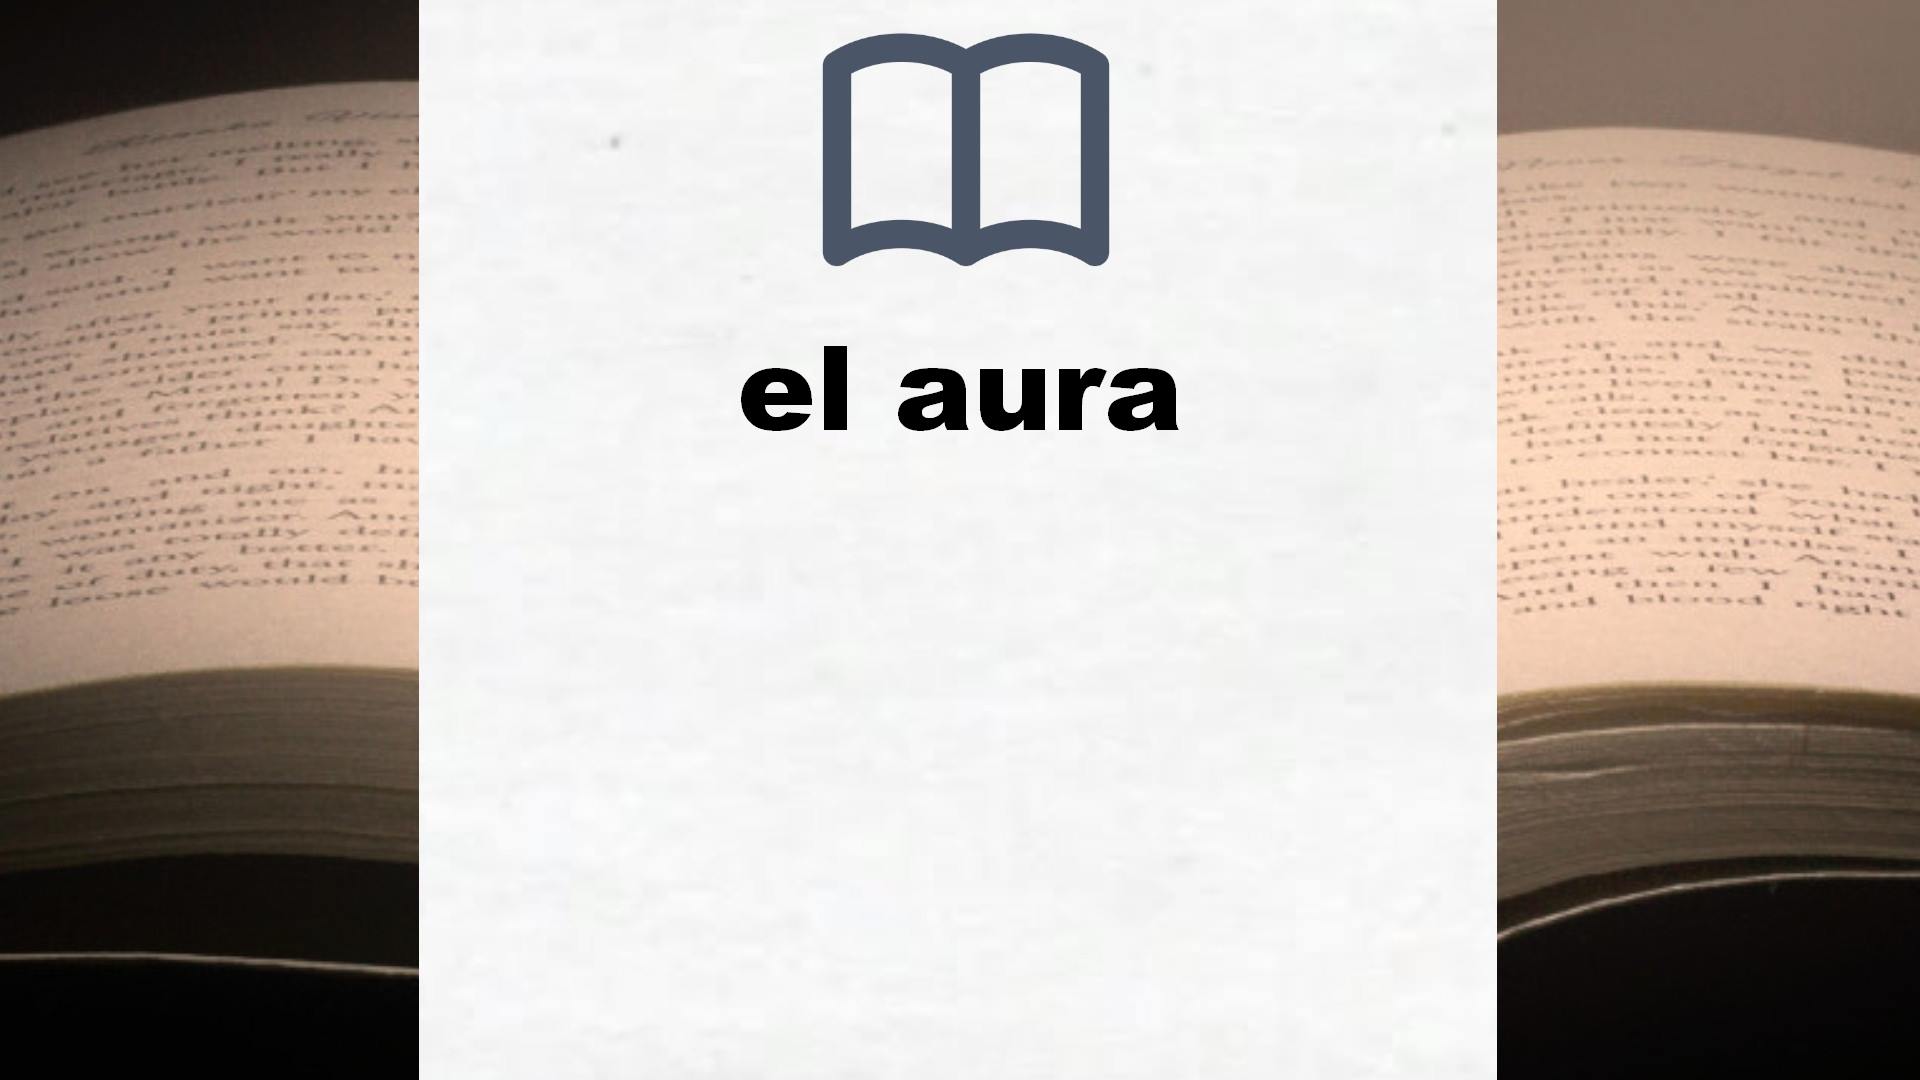 Libros sobre el aura